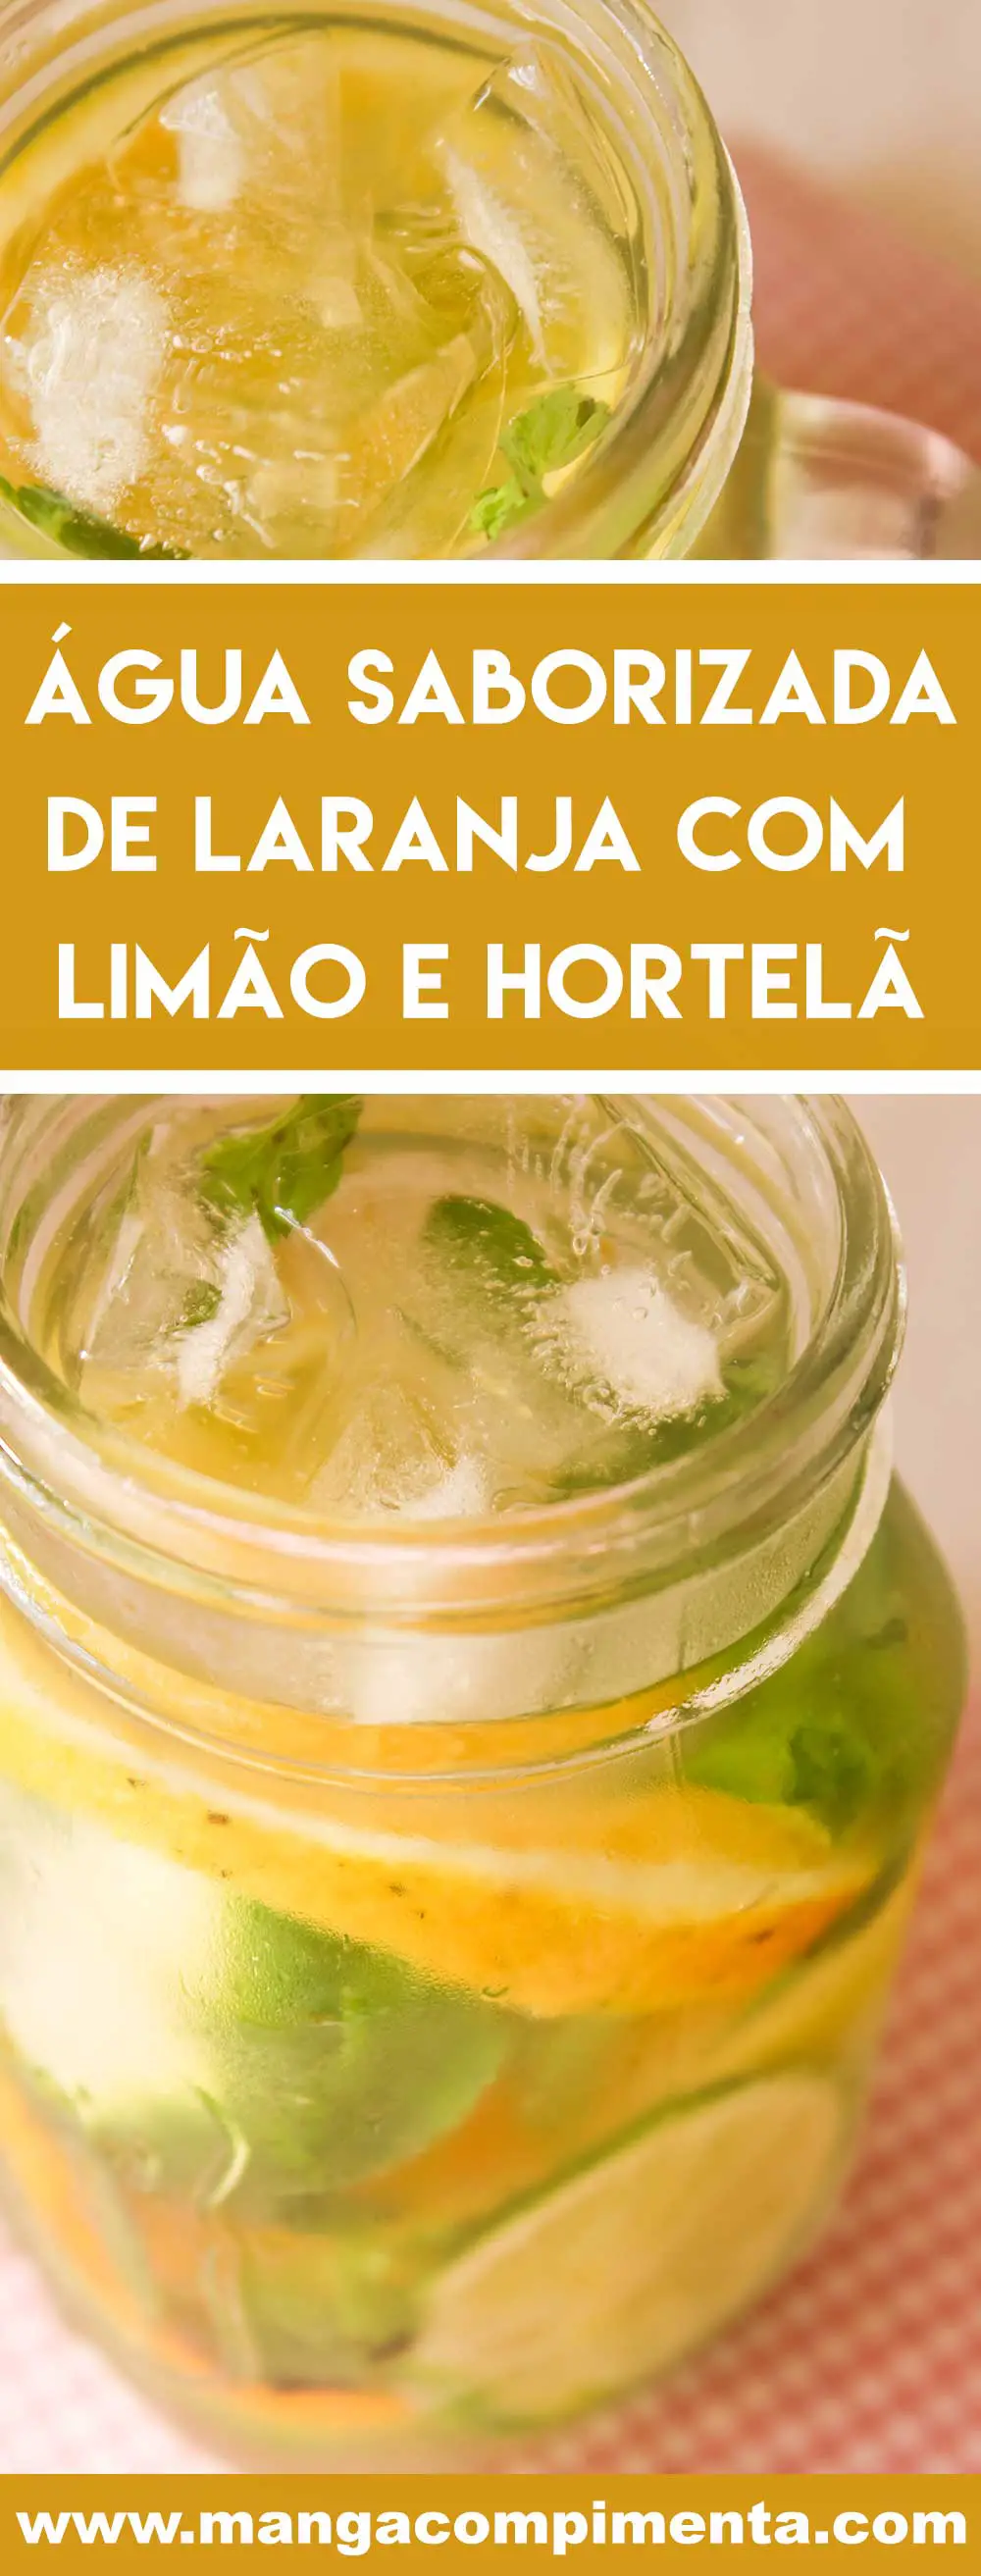 Receita de Água Saborizada de Laranja com Limão e Hortelã - uma bebida refrescante para curtir o verão!